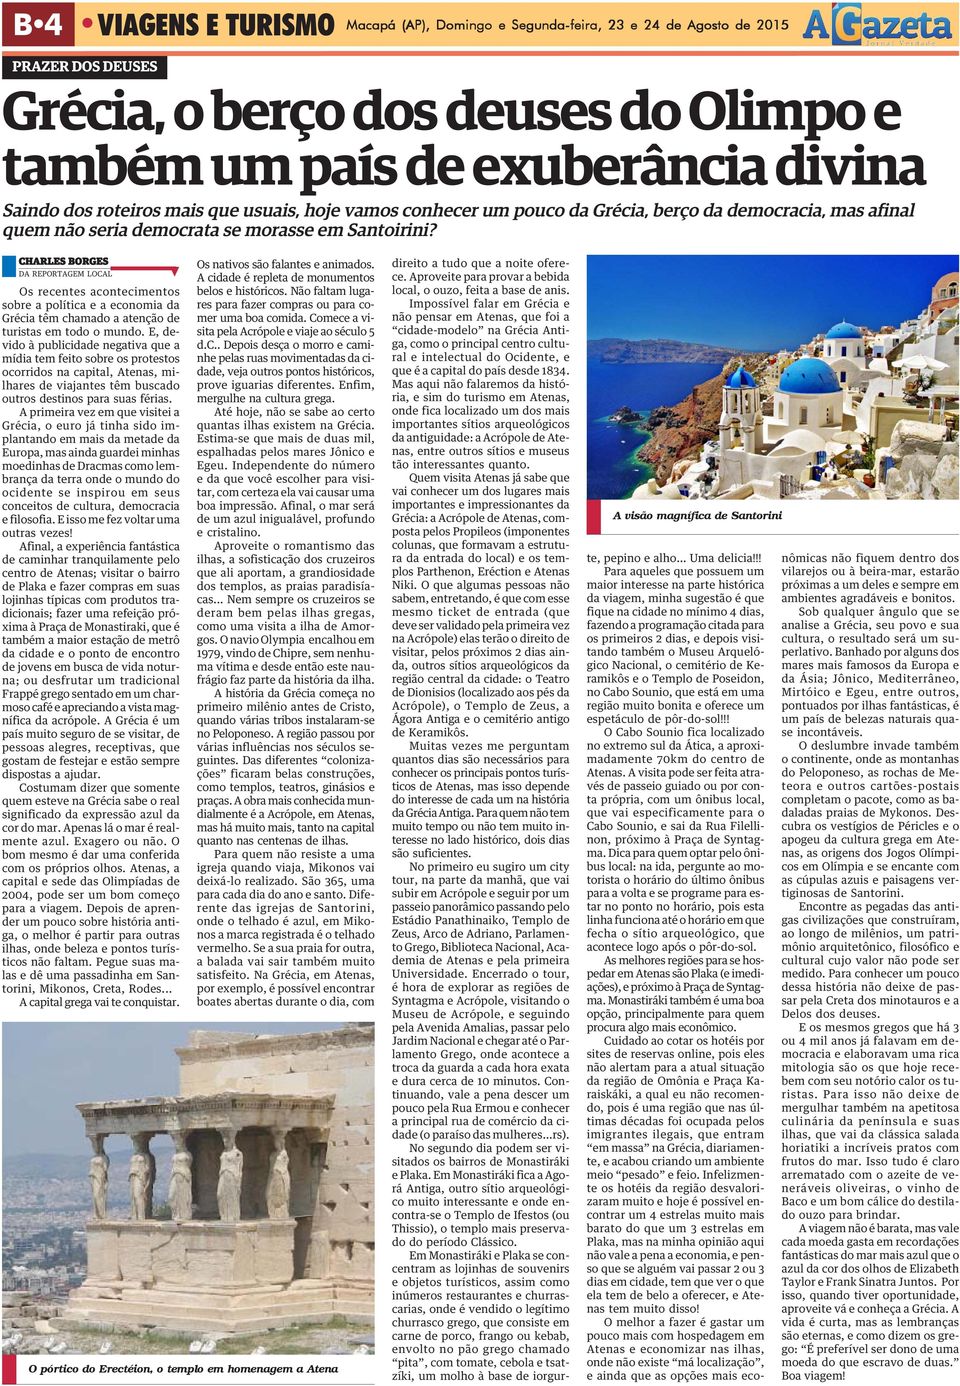 CHARLES BORGES DA REPORTAGEM LOCAL Os recentes acontecimentos sobre a política e a economia da Grécia têm chamado a atenção de turistas em todo o mundo.